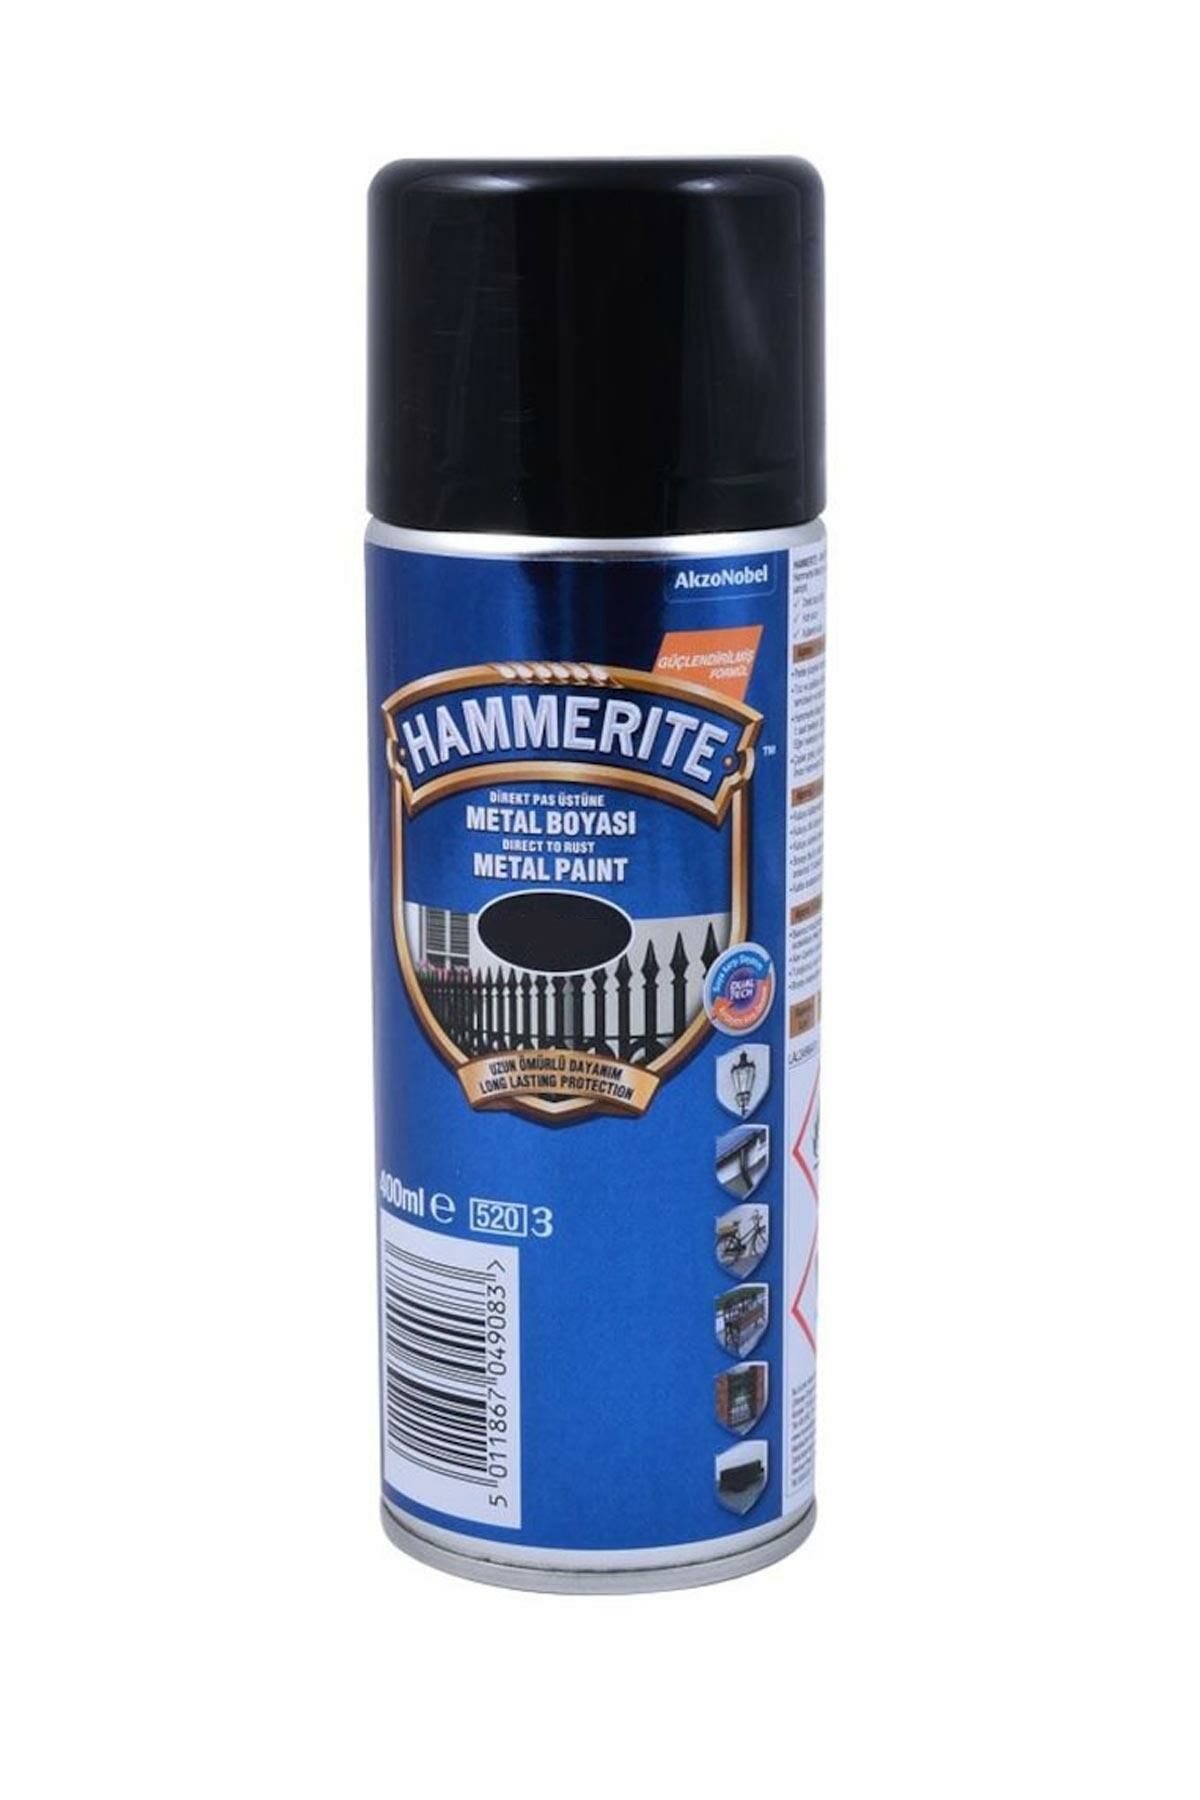 Hammerite Direkt Pas Üzeri Çekiçlenmiş Sprey Boya 400 ml.